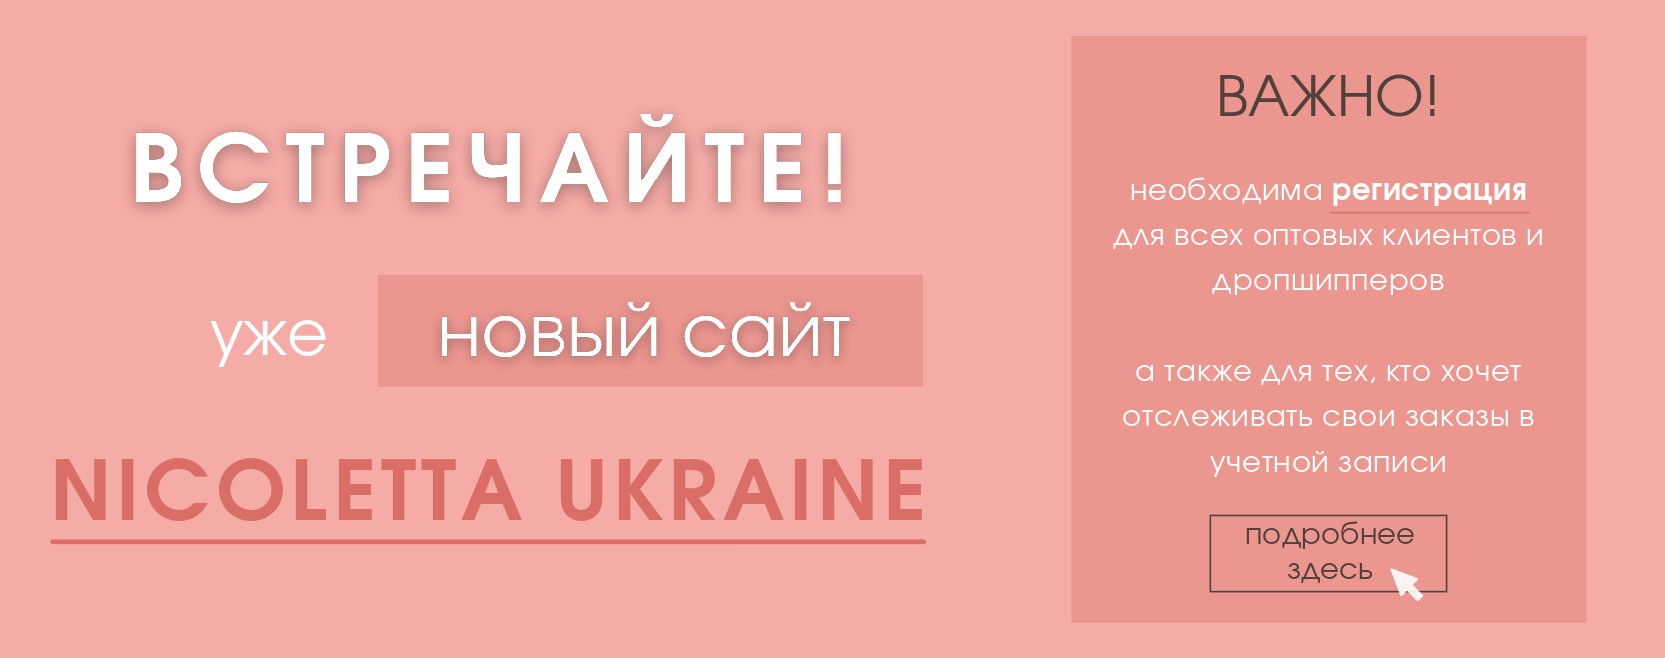 Новый сайт Nicoletta Ukraine